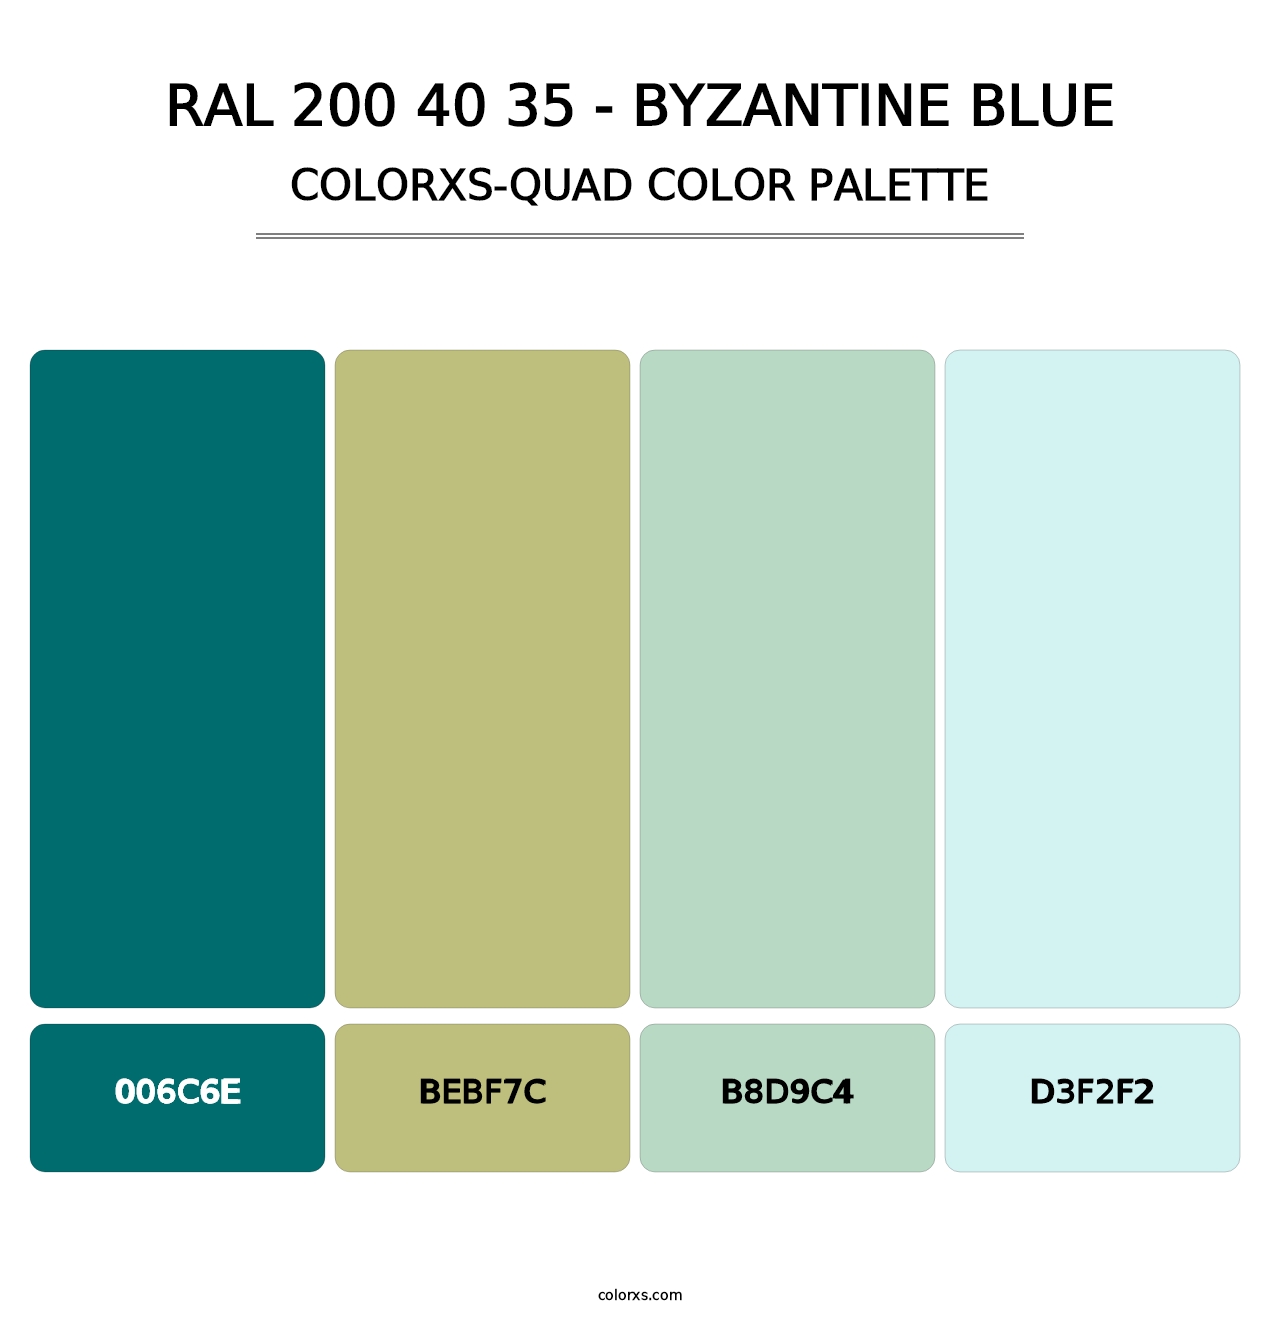 RAL 200 40 35 - Byzantine Blue - Colorxs Quad Palette